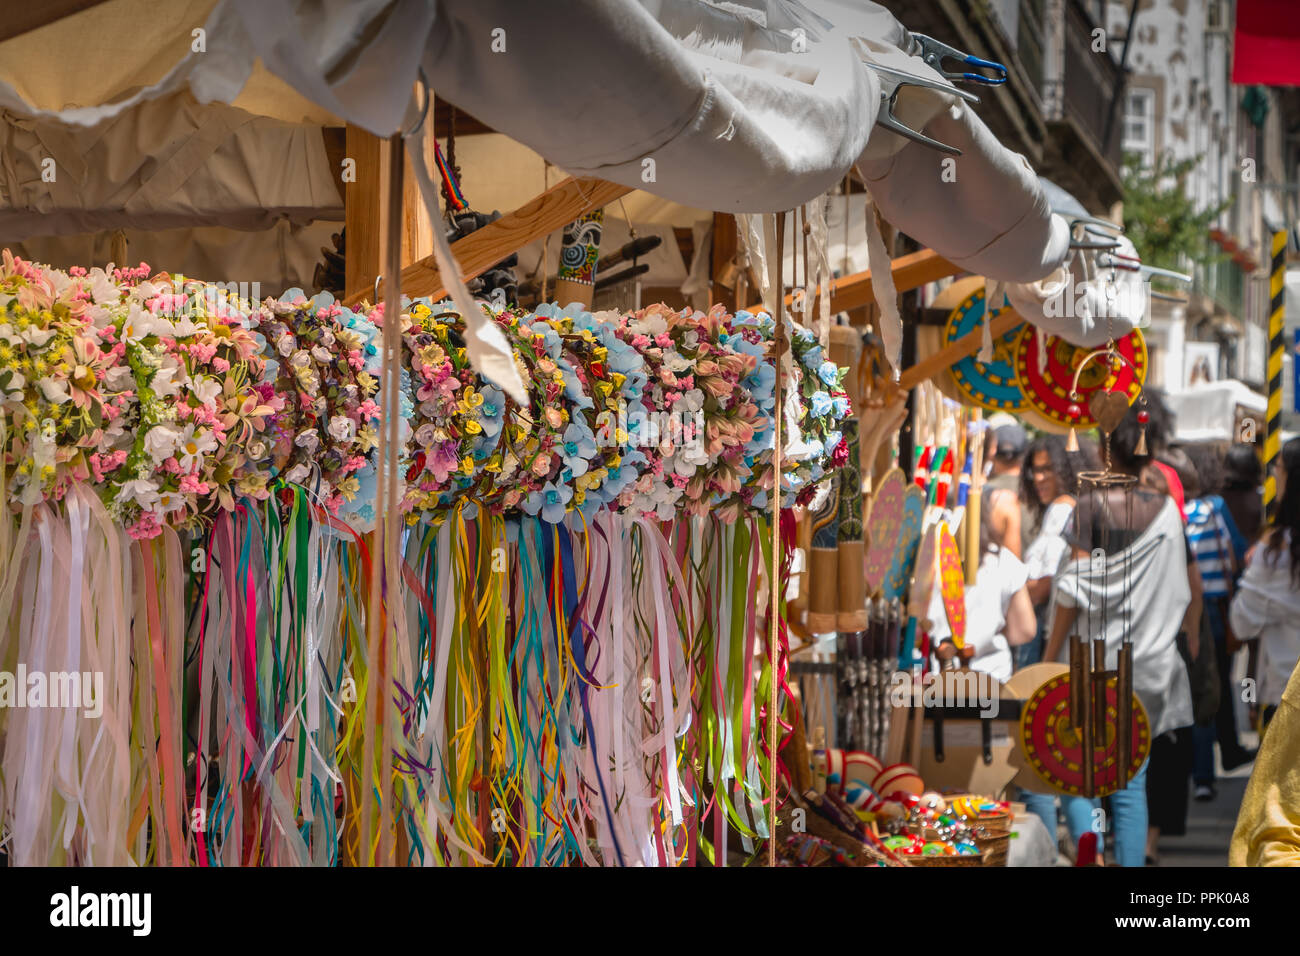 Braga, Portugal - 23 de mayo de 2018: exhibición de artesanías en un  mercado callejero, dando vida a la época romana durante el evento Braga  romana Fotografía de stock - Alamy